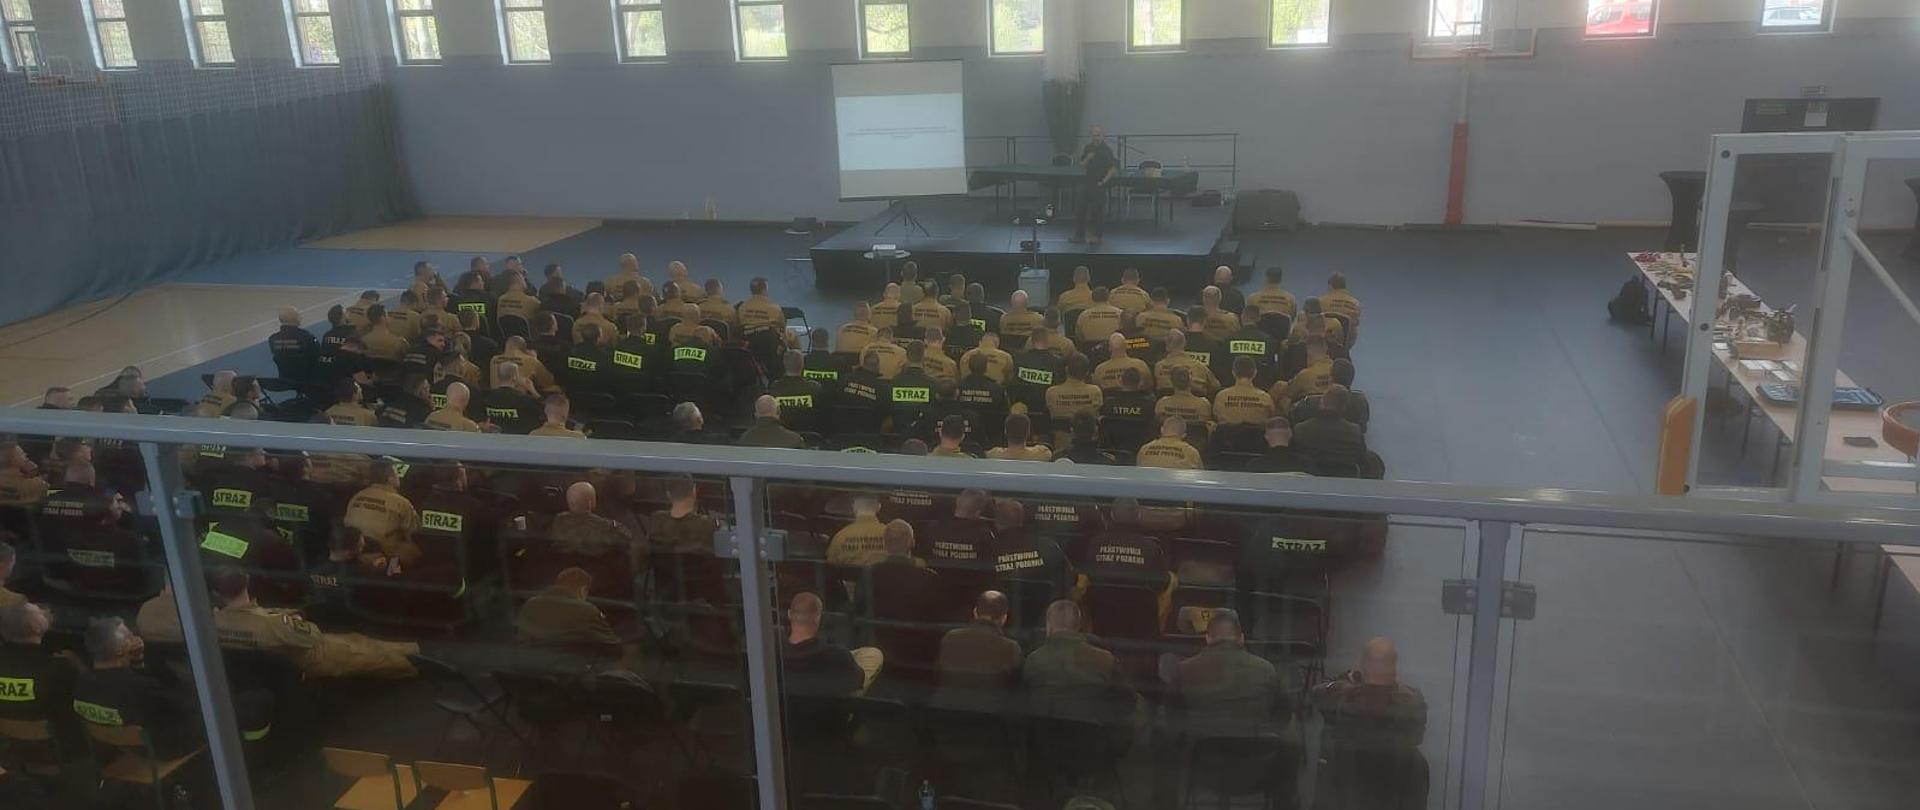 Zdjęcie przedstawia strażaków oraz wykładowcę podczas wykładu na sali gimnastycznej, w tle widać uruchomioną na projektorze prezentację